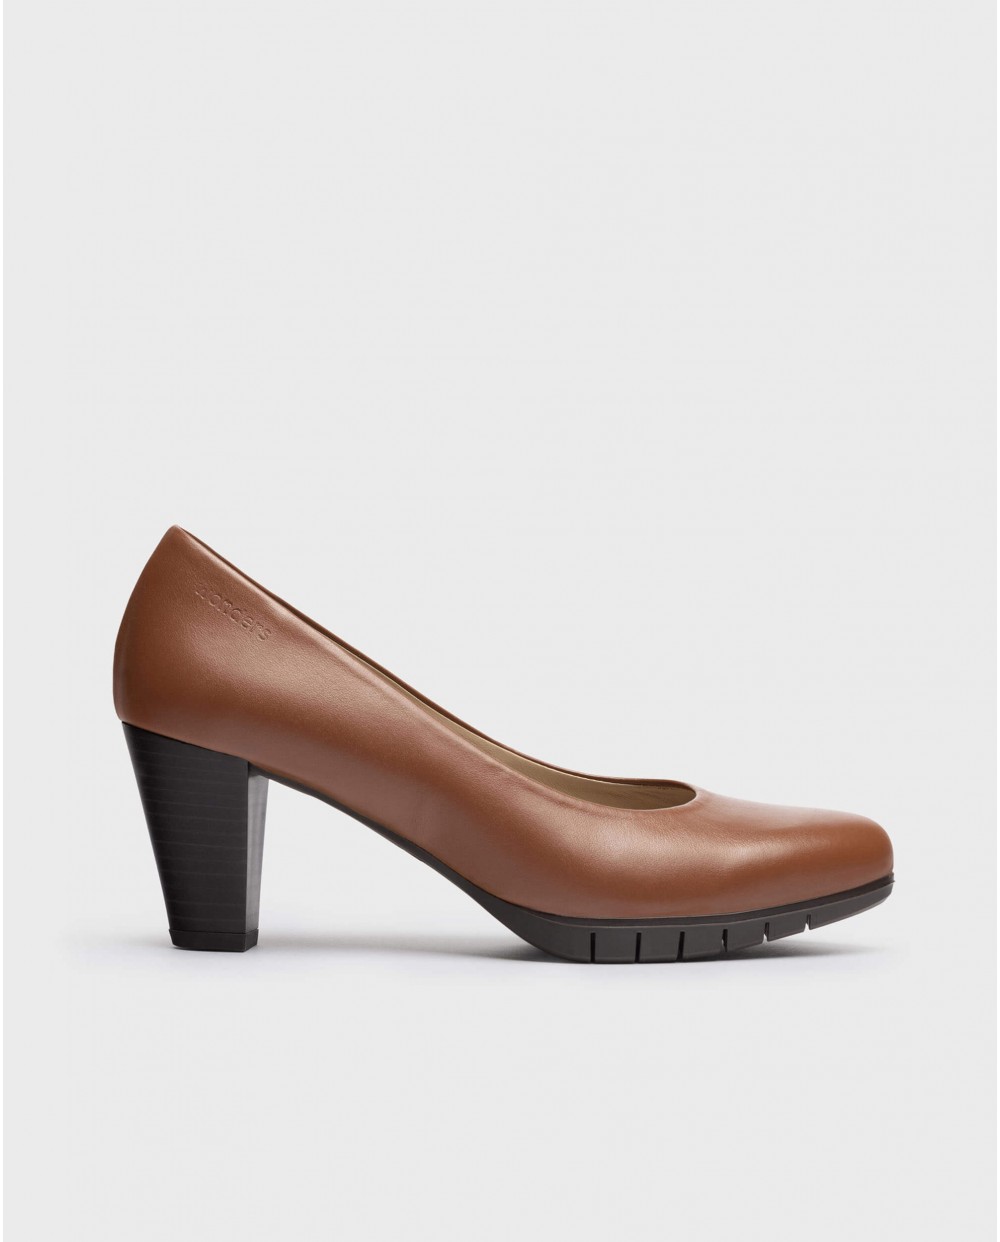 High heeled shoe